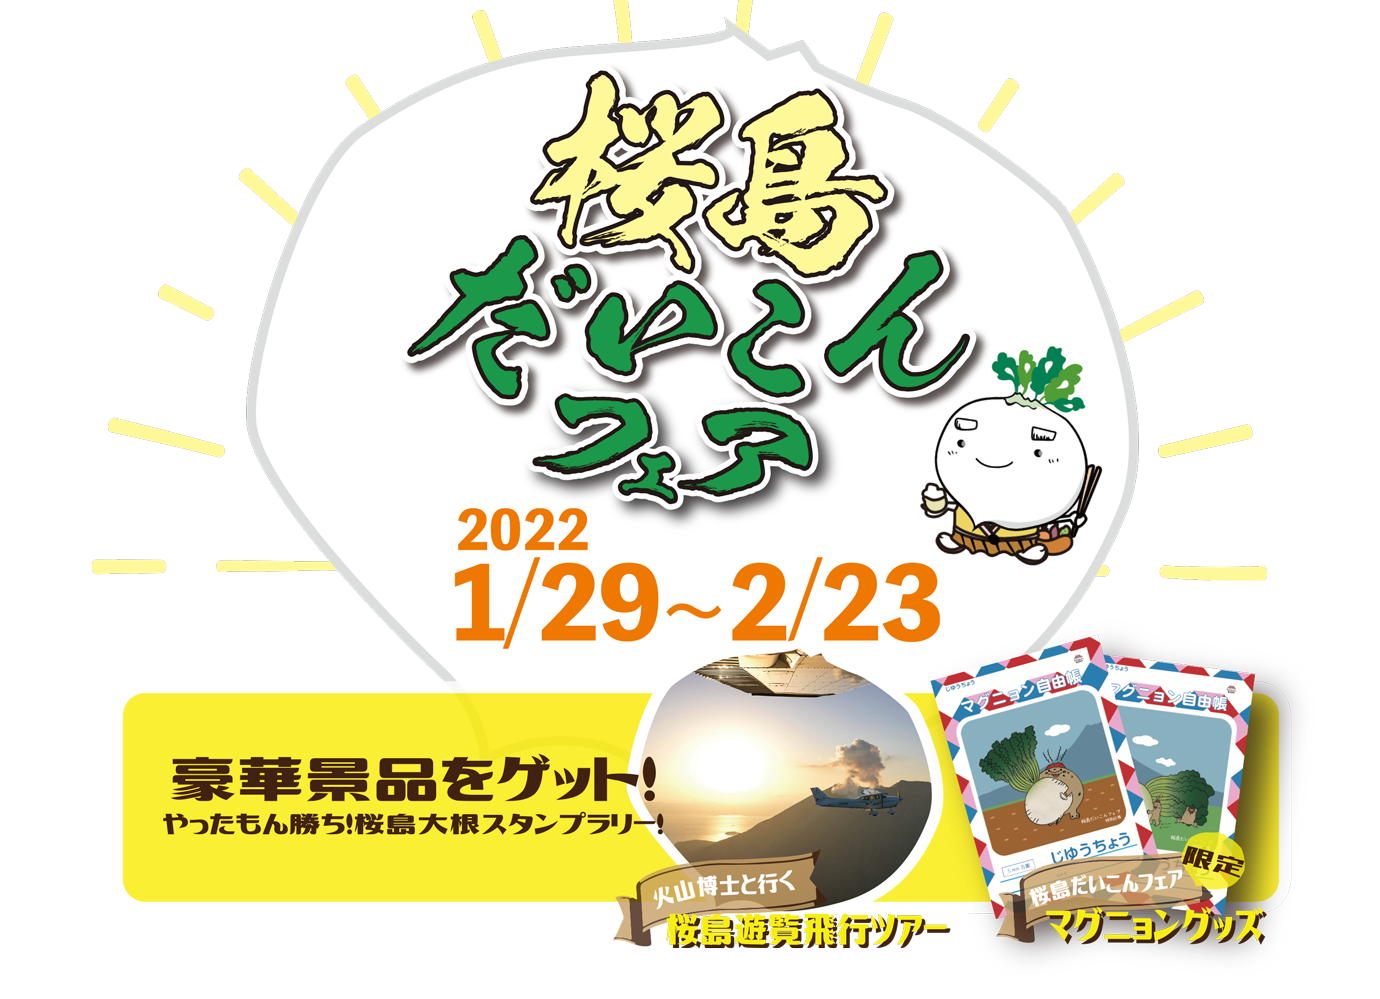 桜島だいこんフェア 1月29日から2月23日まで開催！1日限定イベントもりだくさん！